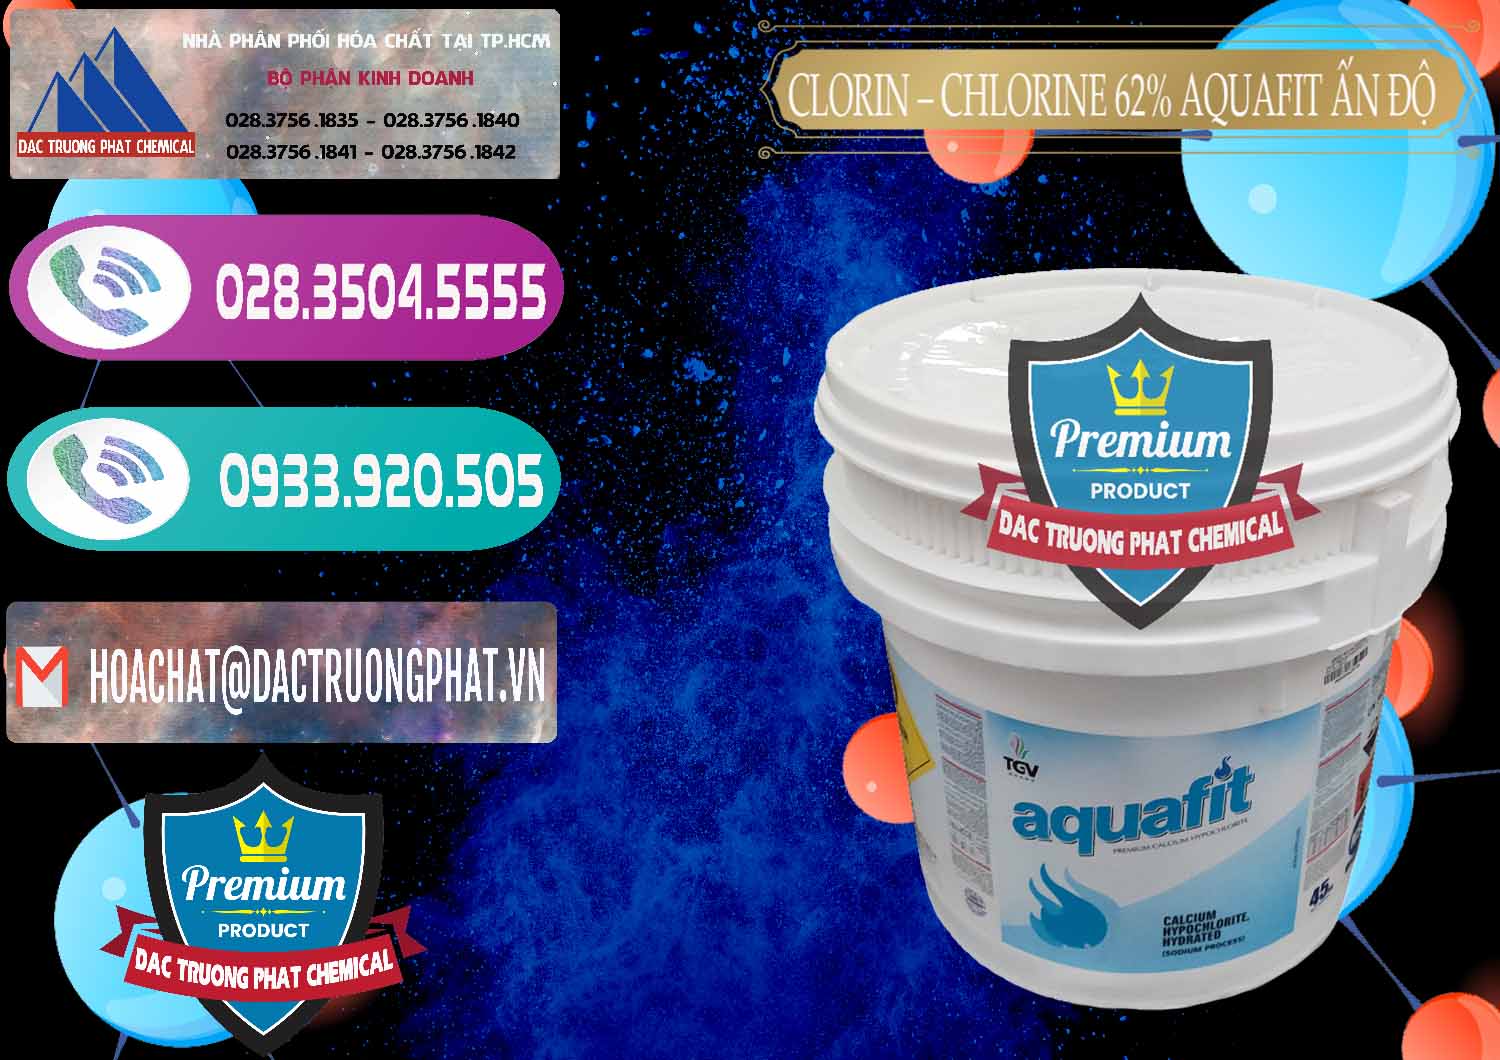 Công ty bán _ cung cấp Clorin - Chlorine 62% Aquafit Thùng Lùn Ấn Độ India - 0057 - Đơn vị kinh doanh _ cung cấp hóa chất tại TP.HCM - hoachatxulynuoc.com